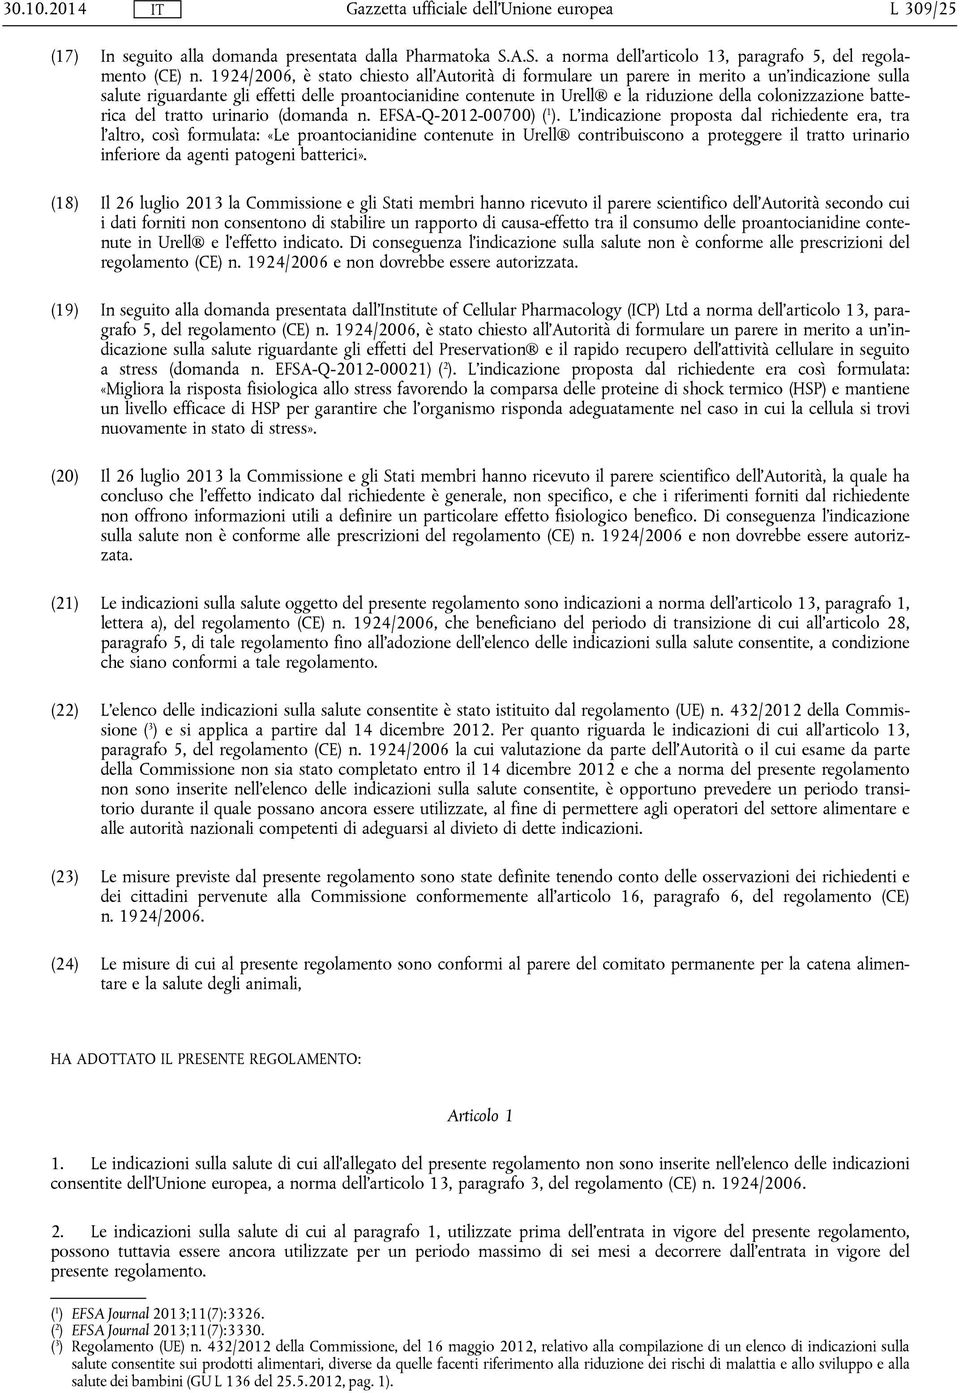 colonizzazione batterica del tratto urinario (domanda n. EFSA-Q-2012-00700) ( 1 ).